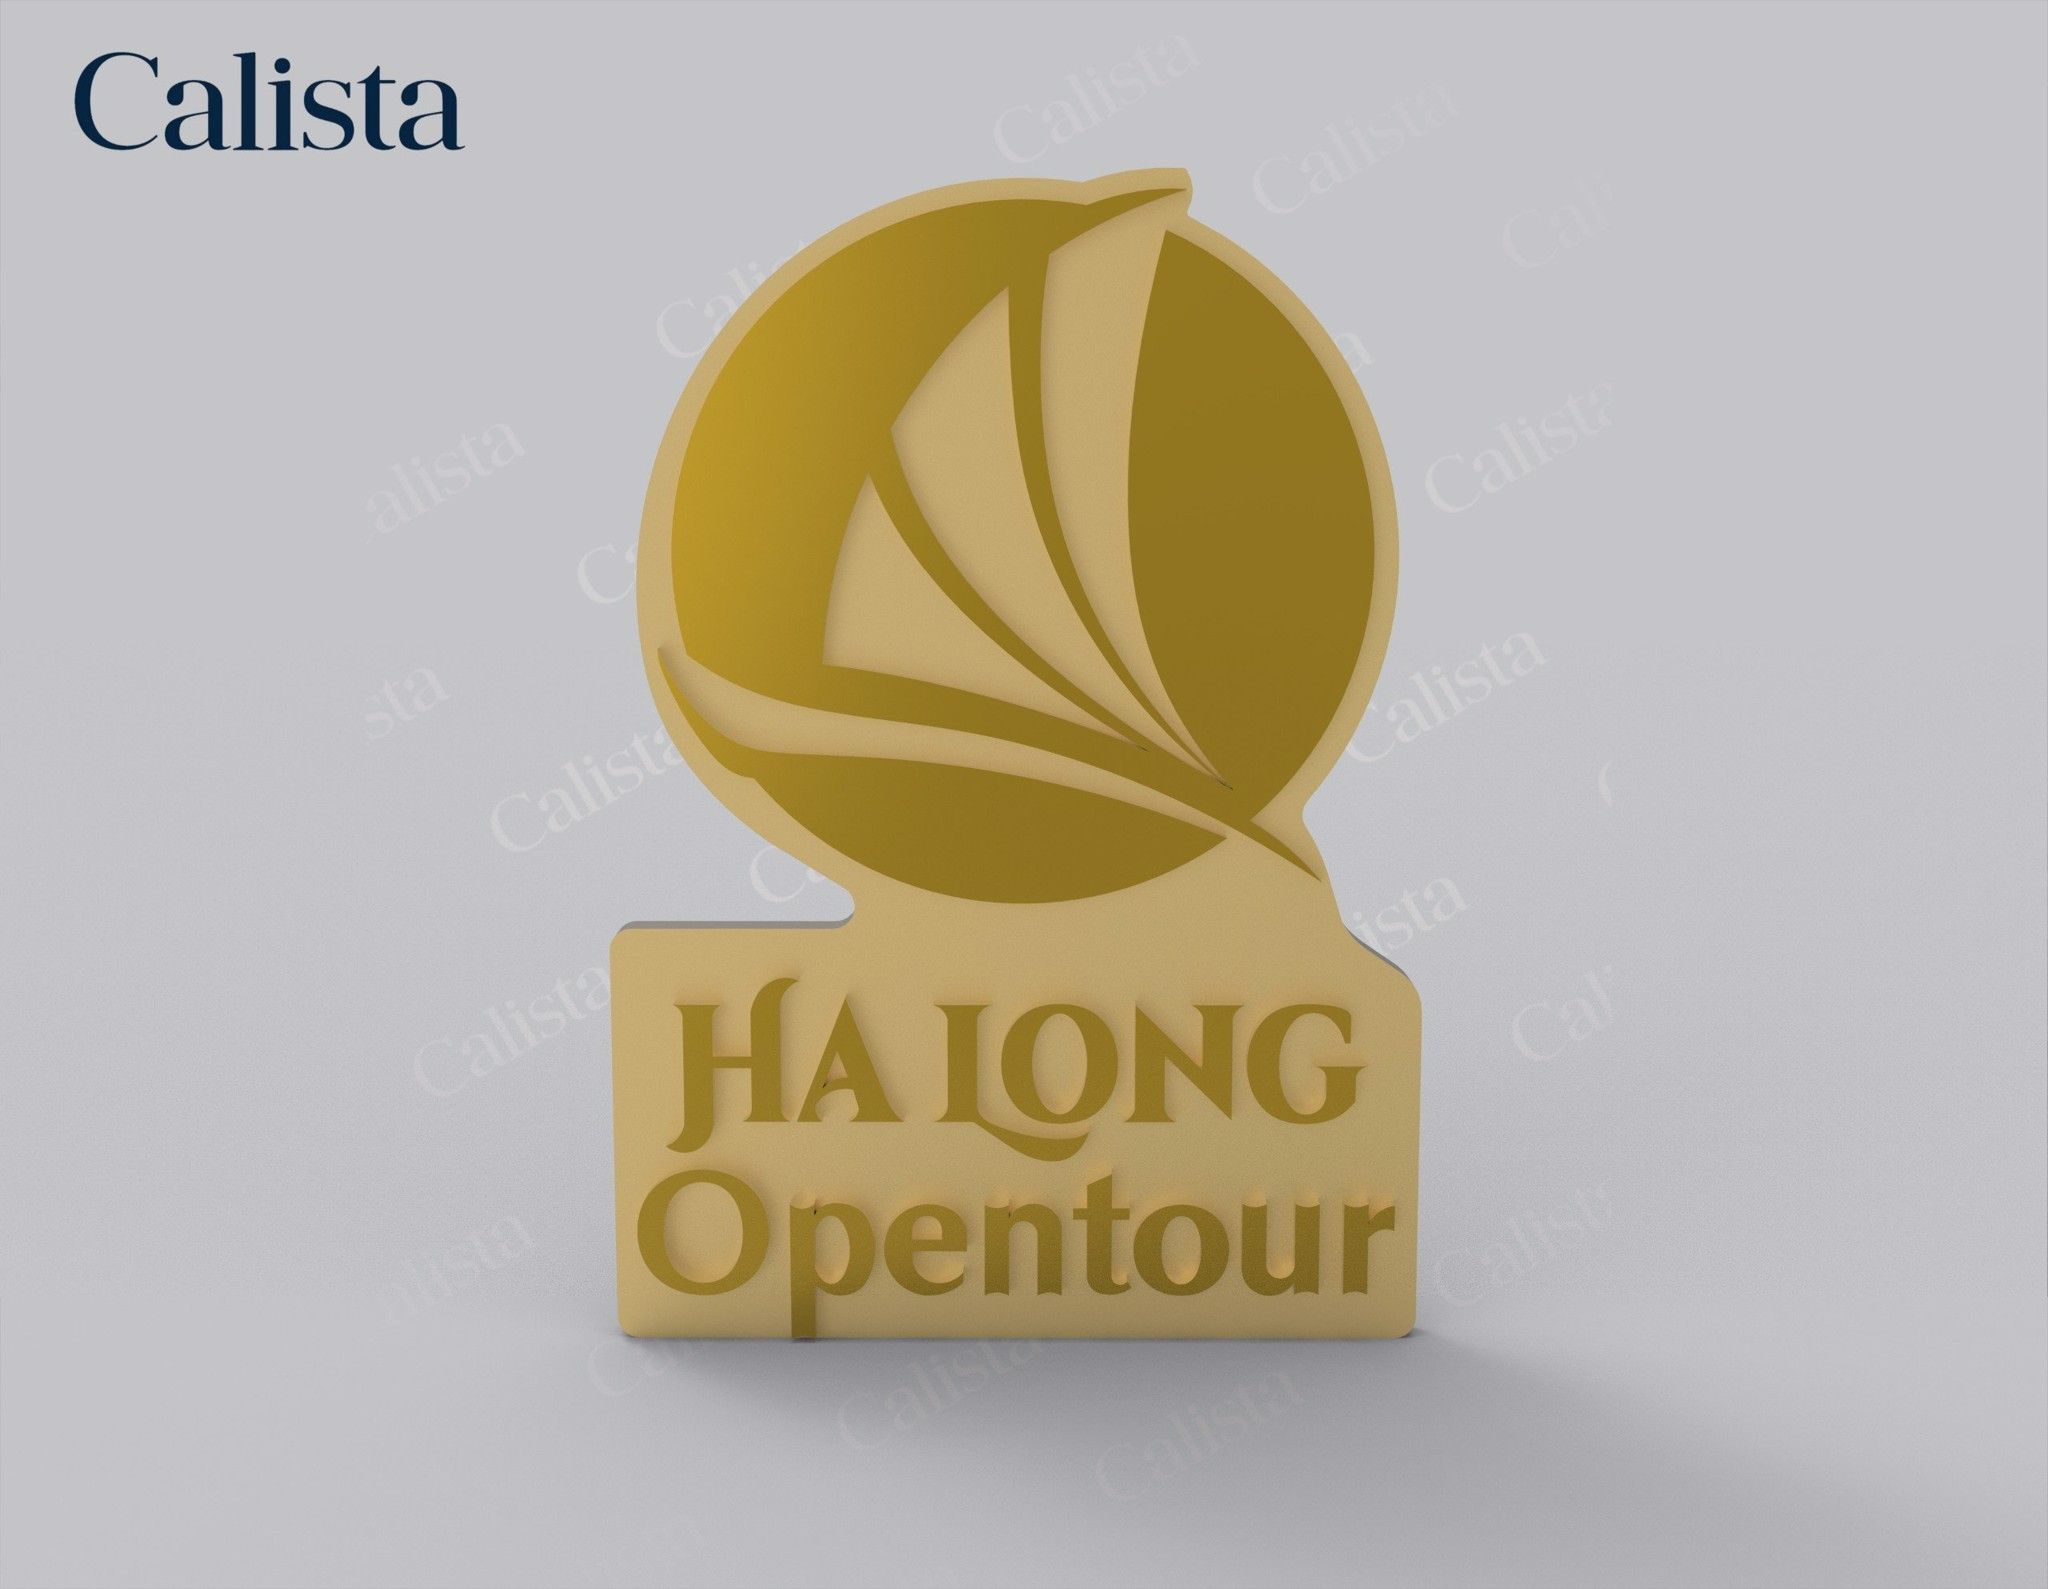  Pin/Huy hiệu cài áo mạ vàng logo doanh nghiệp Hạ Long Opentour 